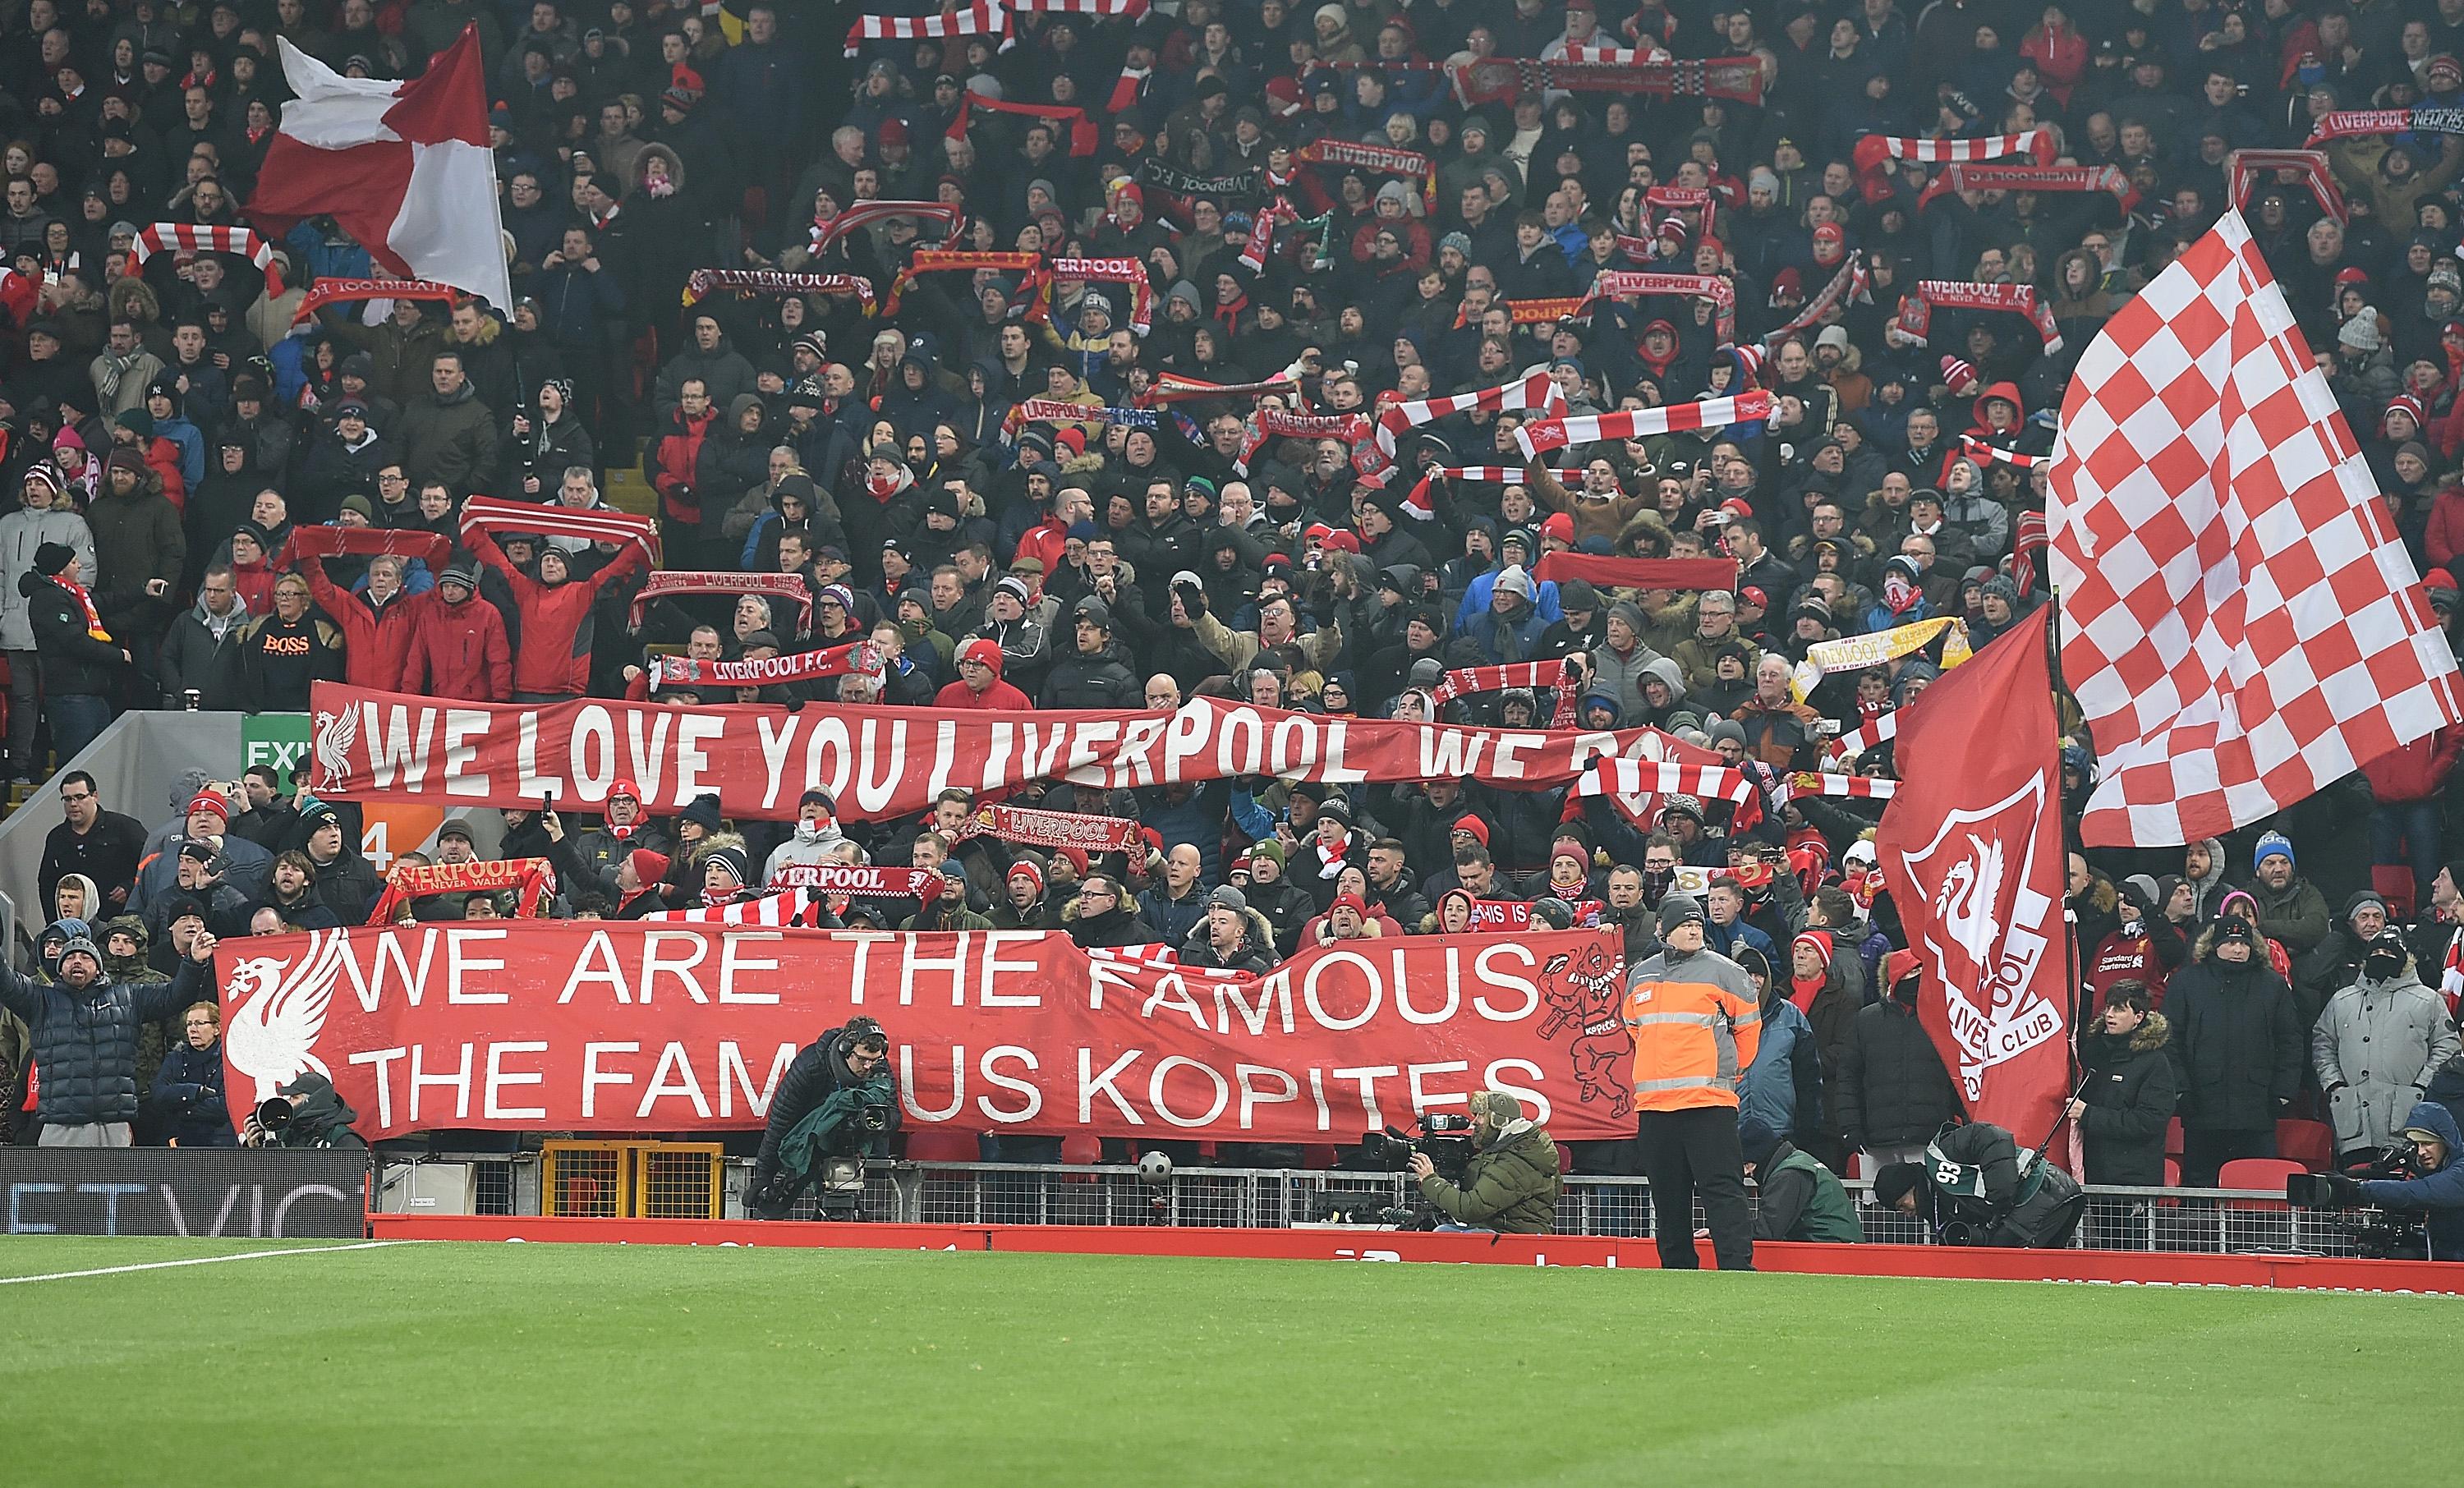 Den Liverpool FC live im Anfield sehen Carlsberg machts möglich